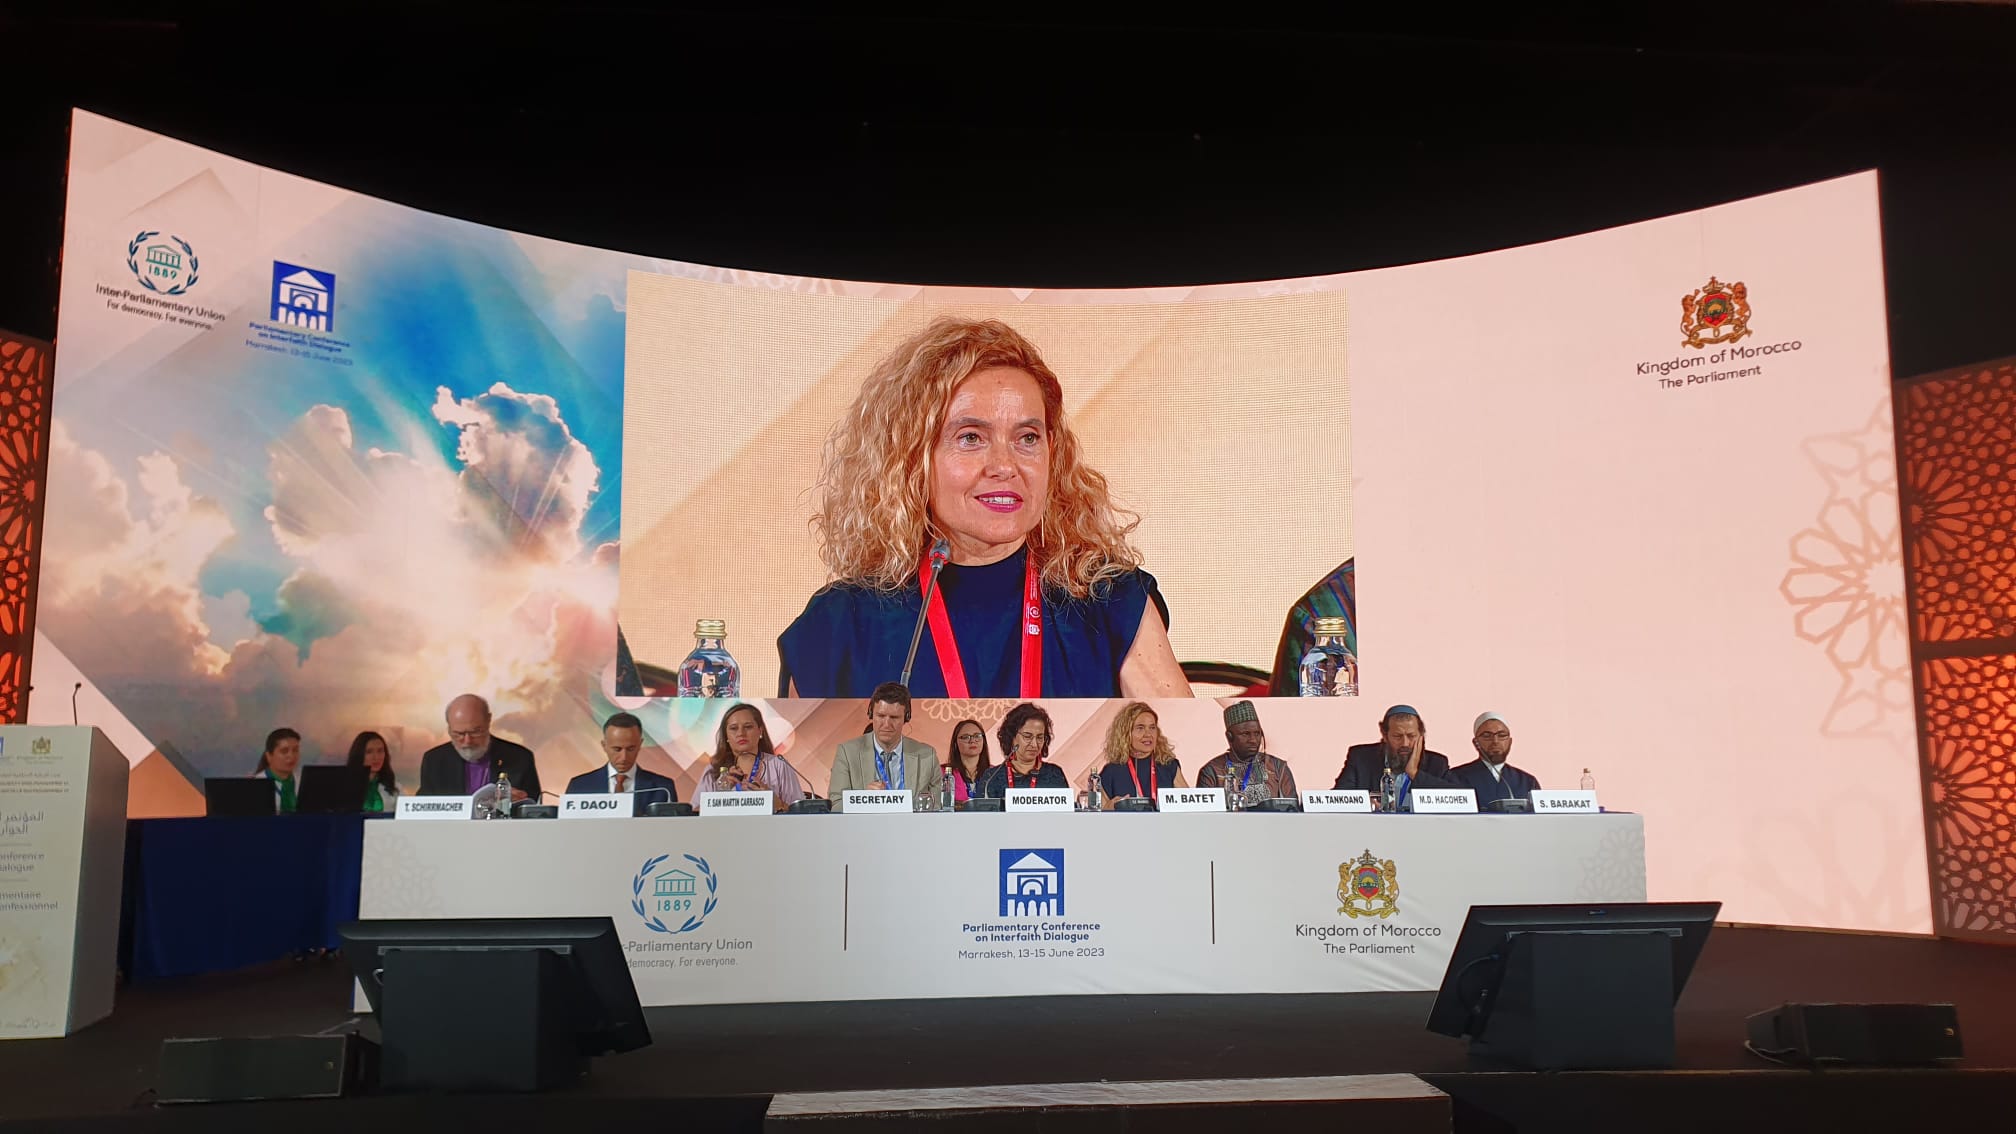 La presidenta del Congreso de los Diputados, Meritxell Batet, interviene en la Conferencia Parlamentaria sobre Diálogo Interreligioso de la UIP, en Marrakech